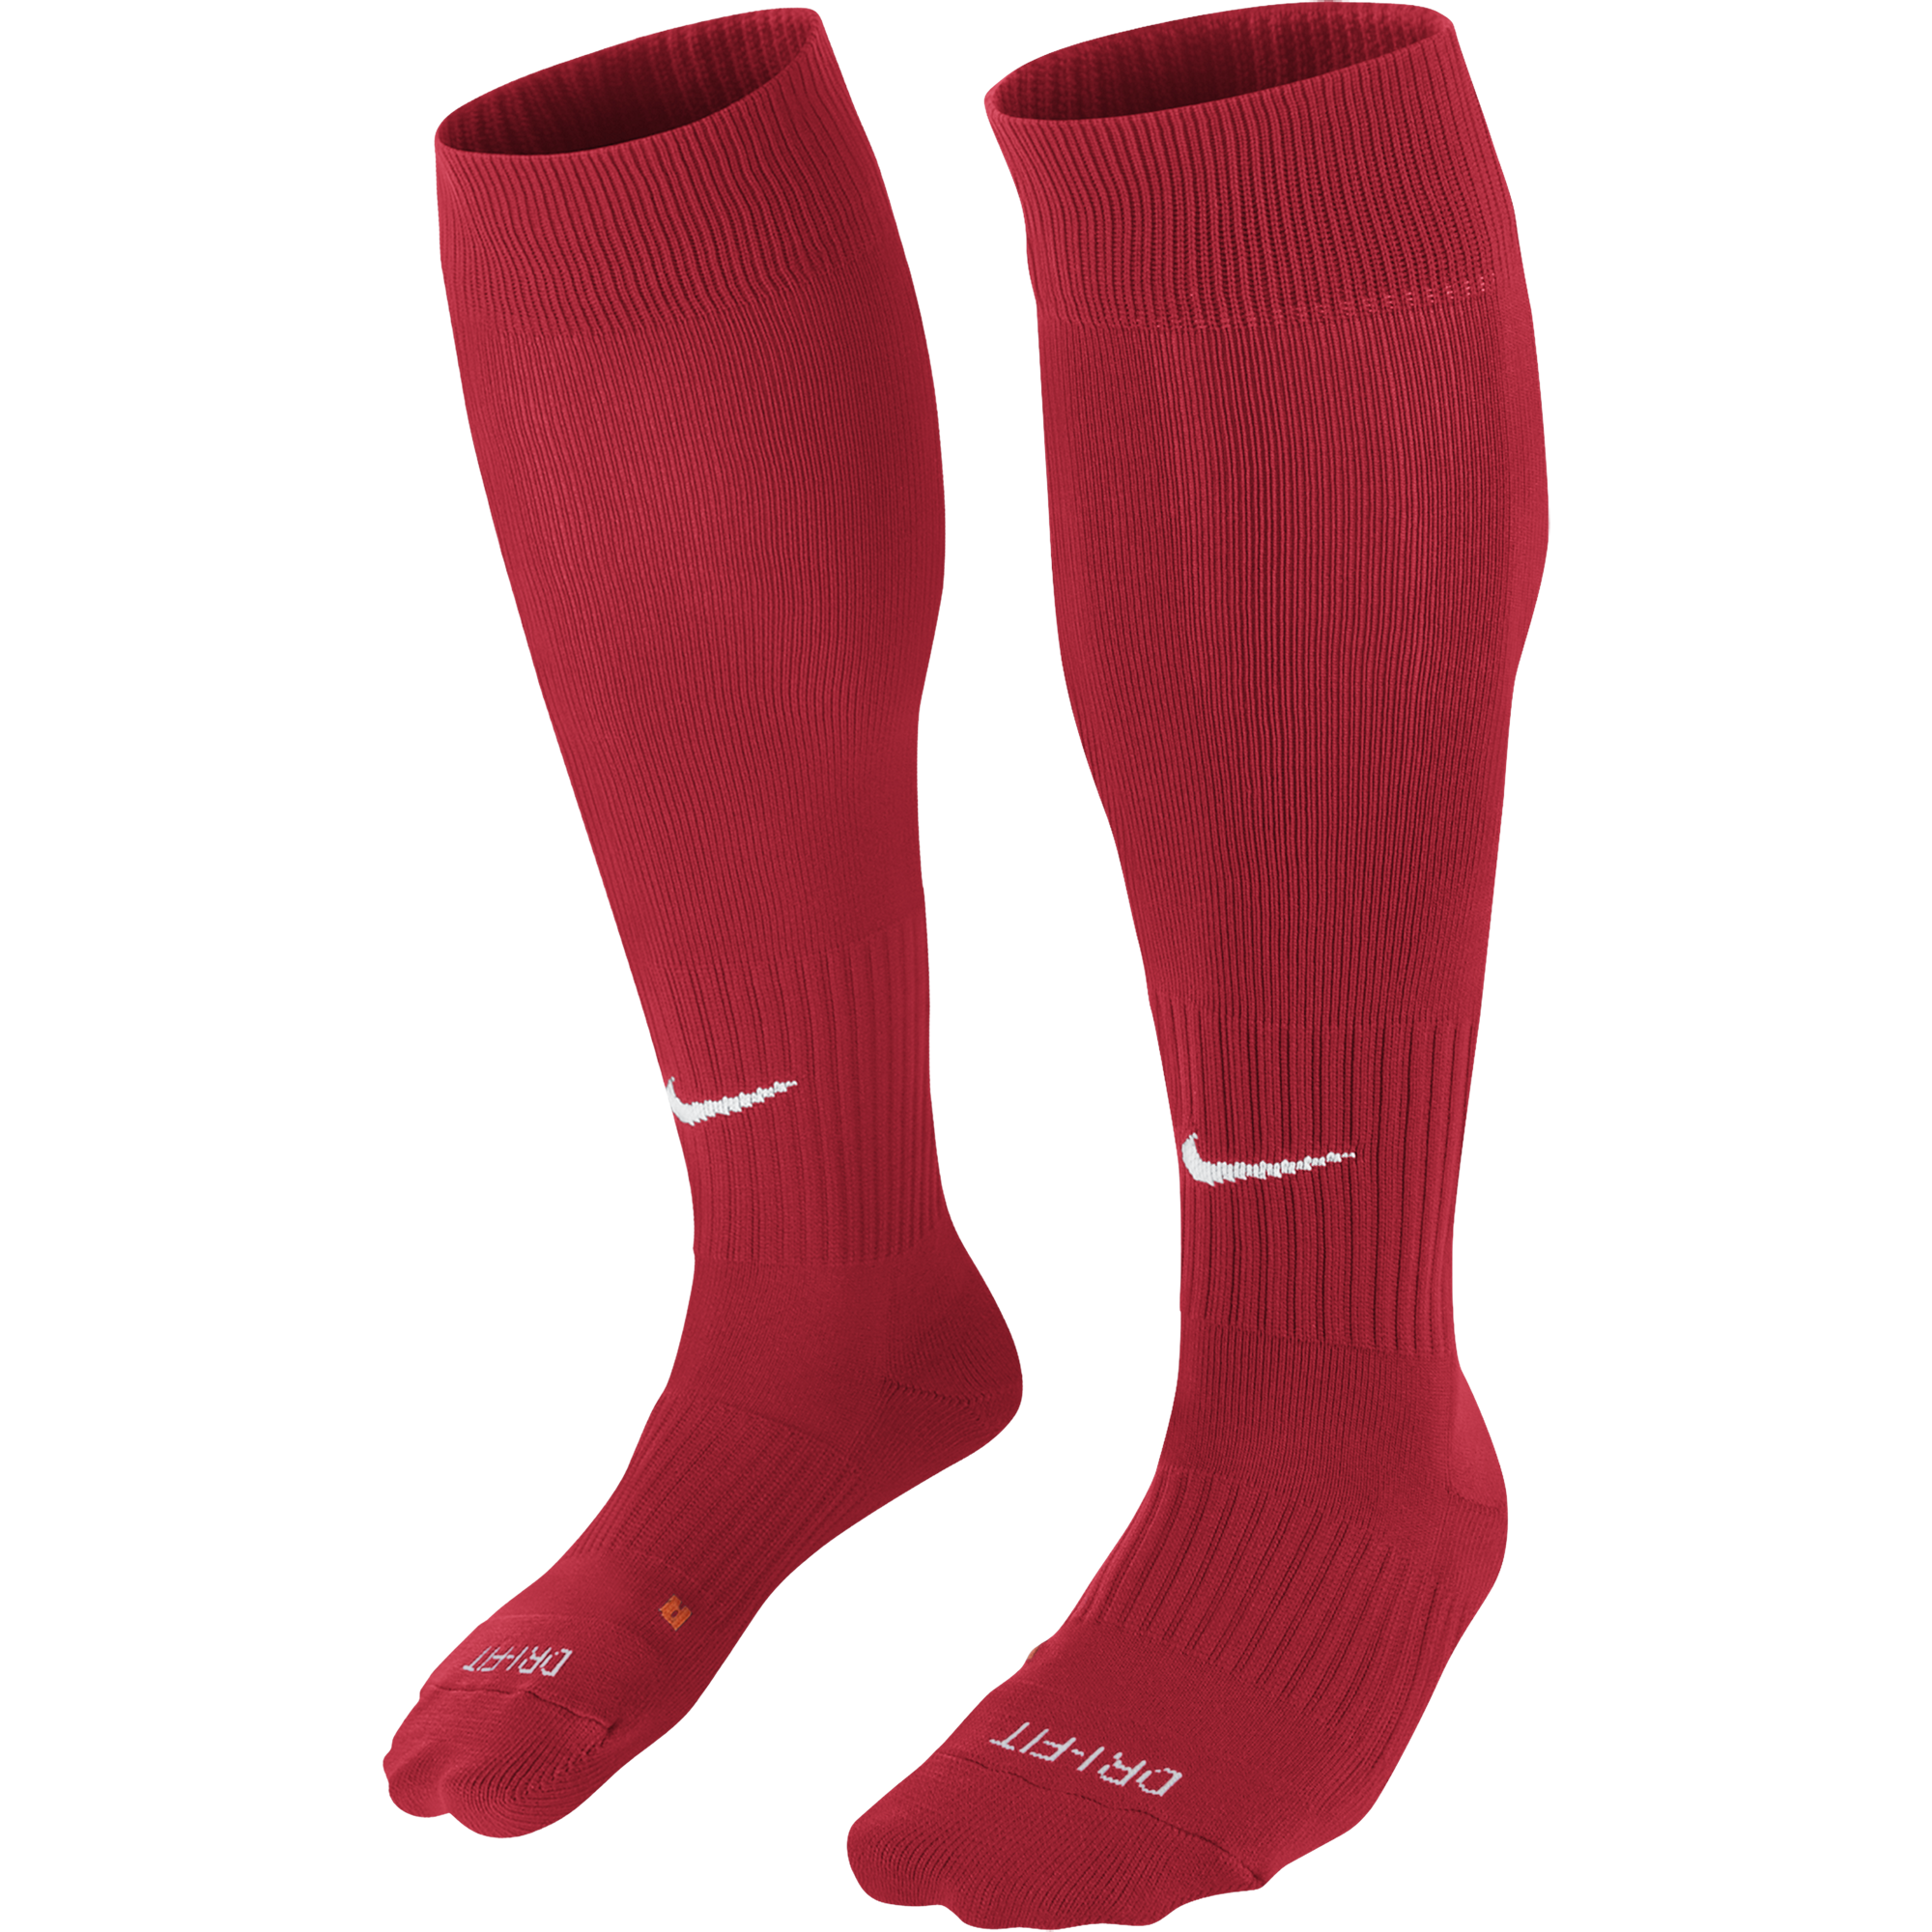 Ingles F.C. - Nike Classic socks, Red. - Fanatics Supplies